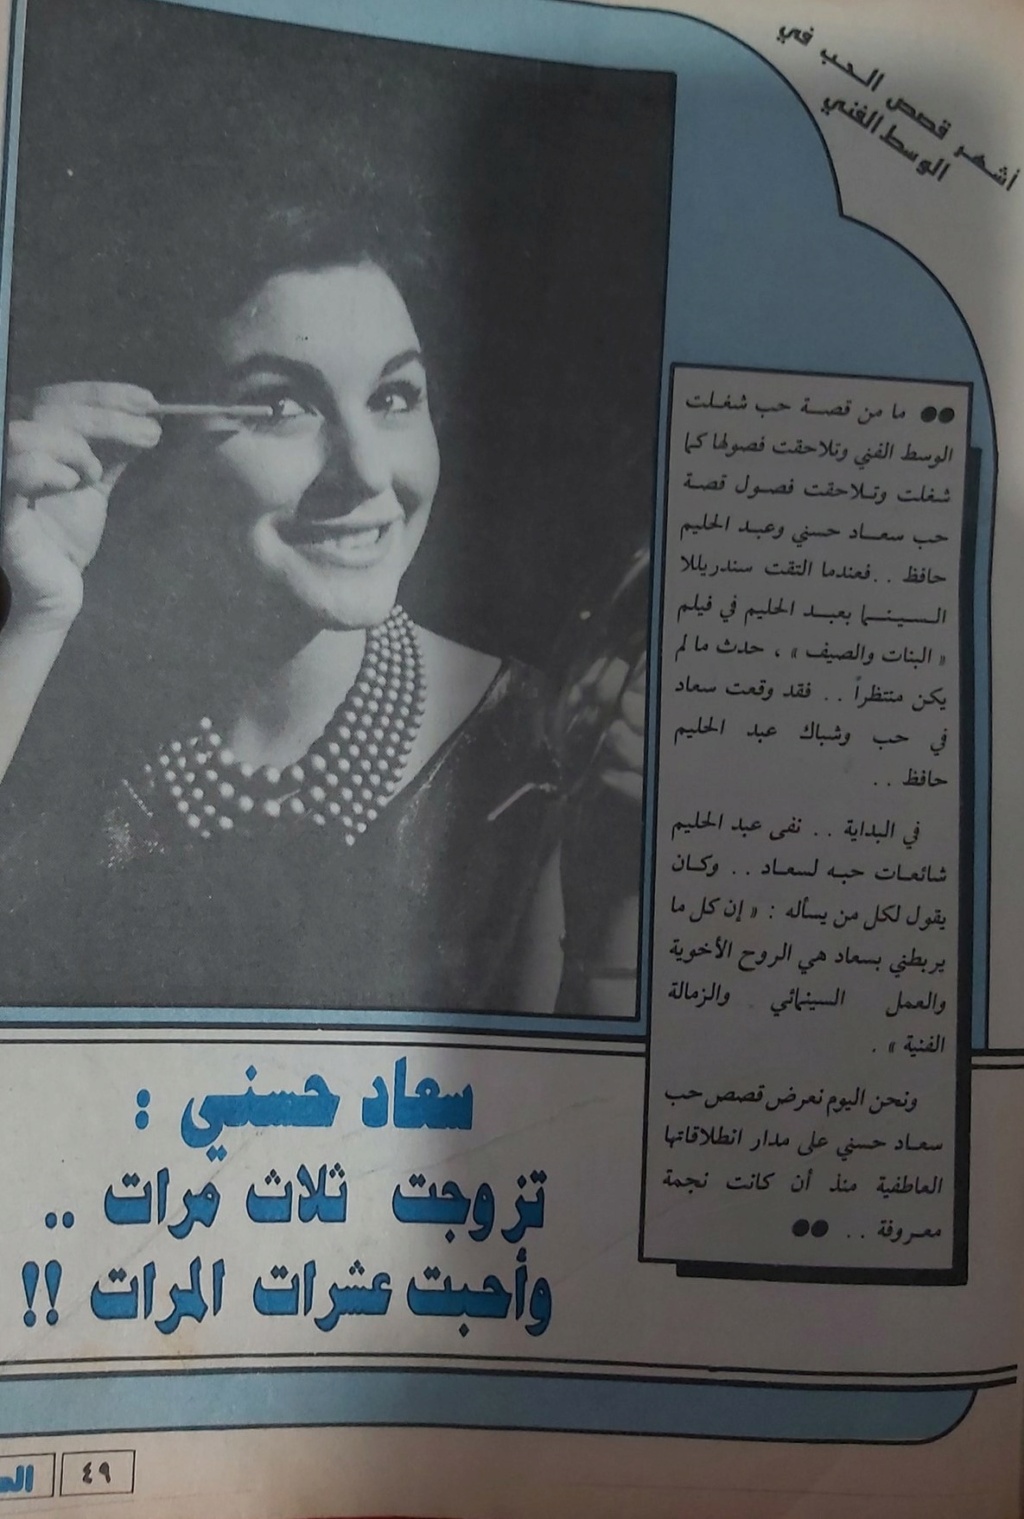 حسني - مقال صحفي : سعاد حسني .. تزوجت ثلاث مرات .. وأحبت عشرات المرات !! 1987 م 135